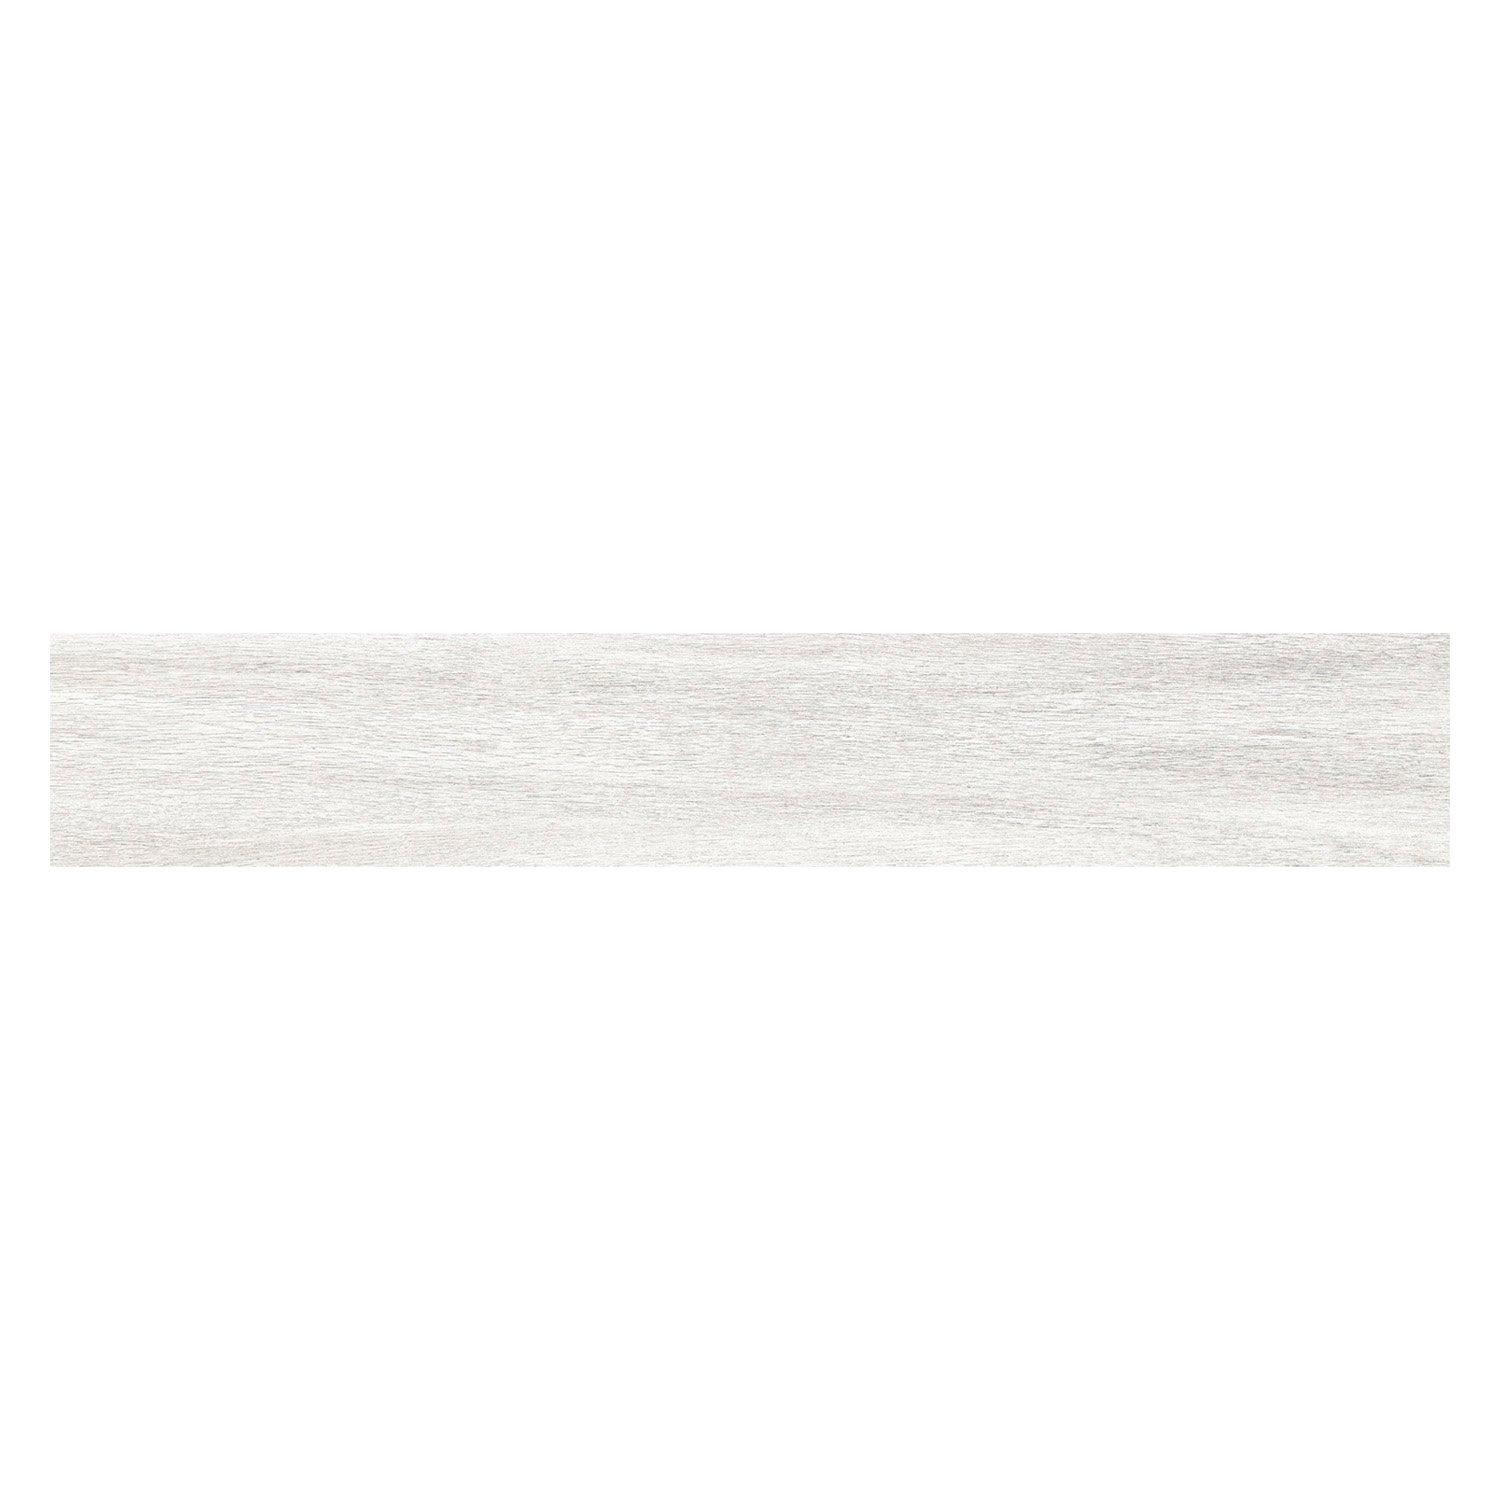 Windermere White Wood Plank Polished Porcelain Tile